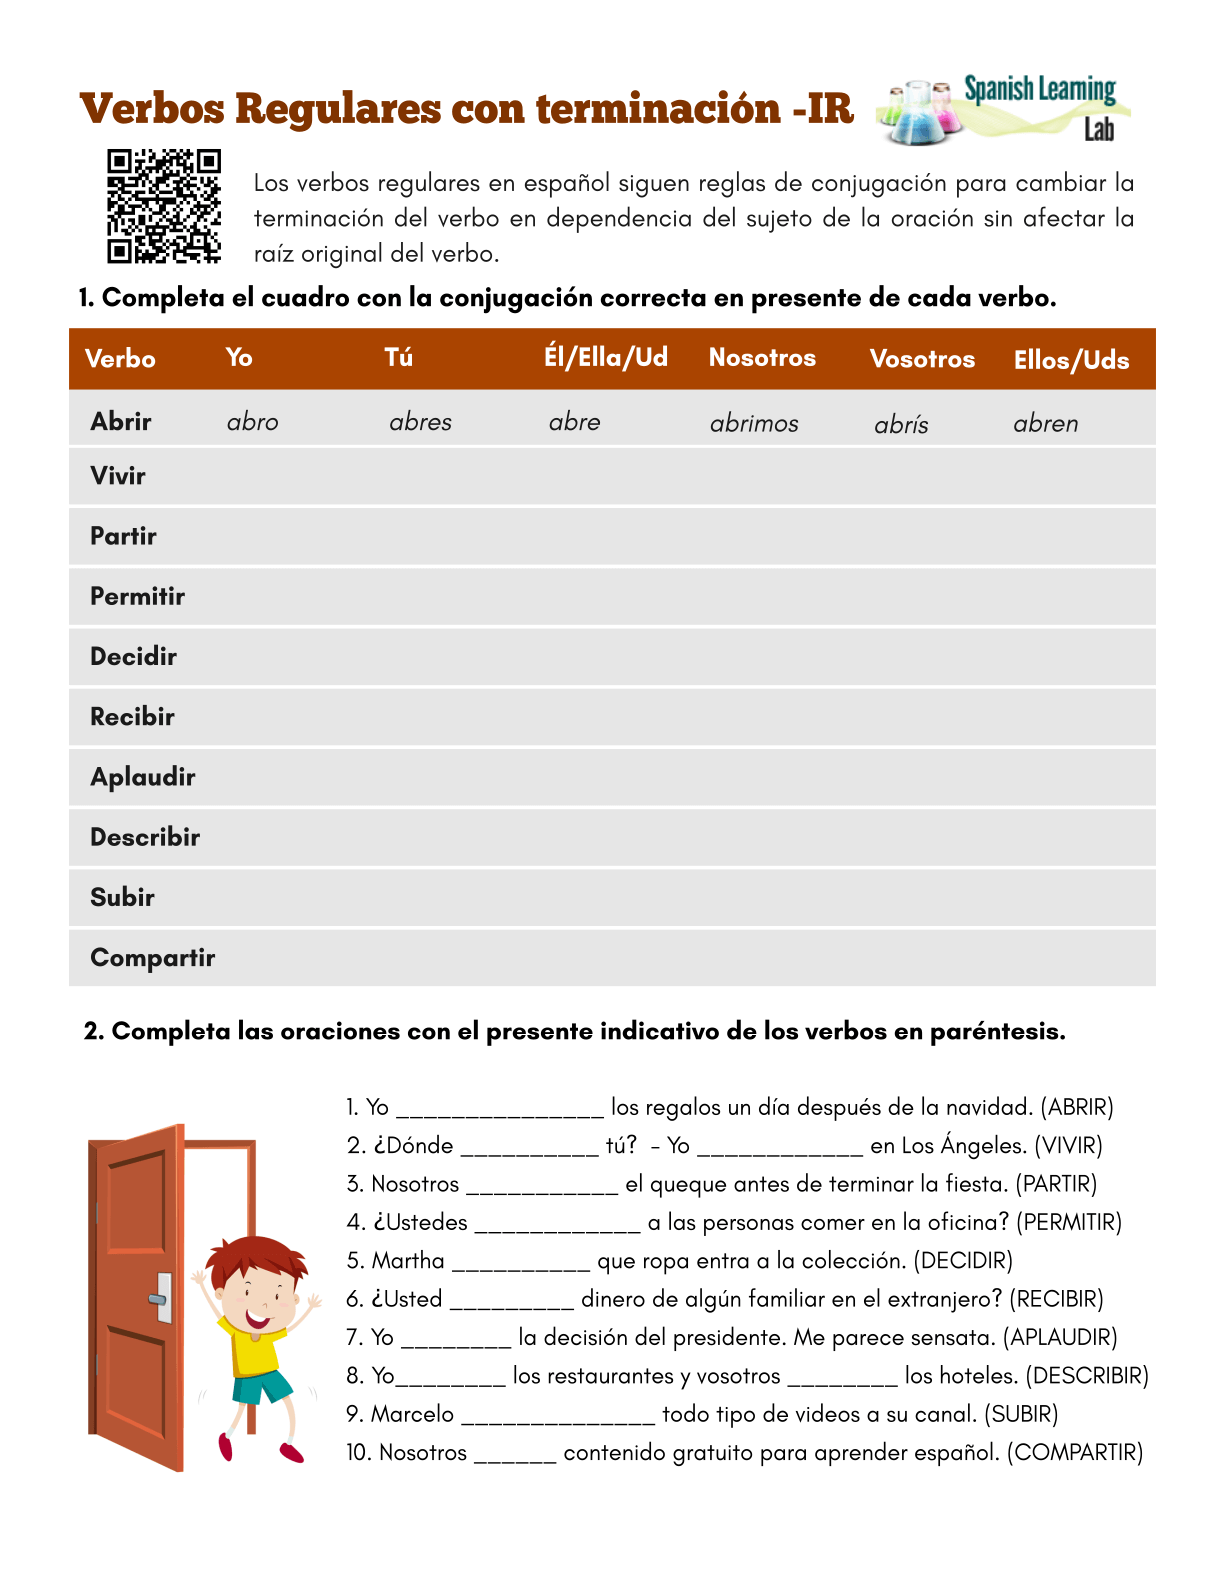 conjugando-los-verbos-regulares-con-terminaci-n-ir-ejercicios-en-pdf-spanish-learning-lab